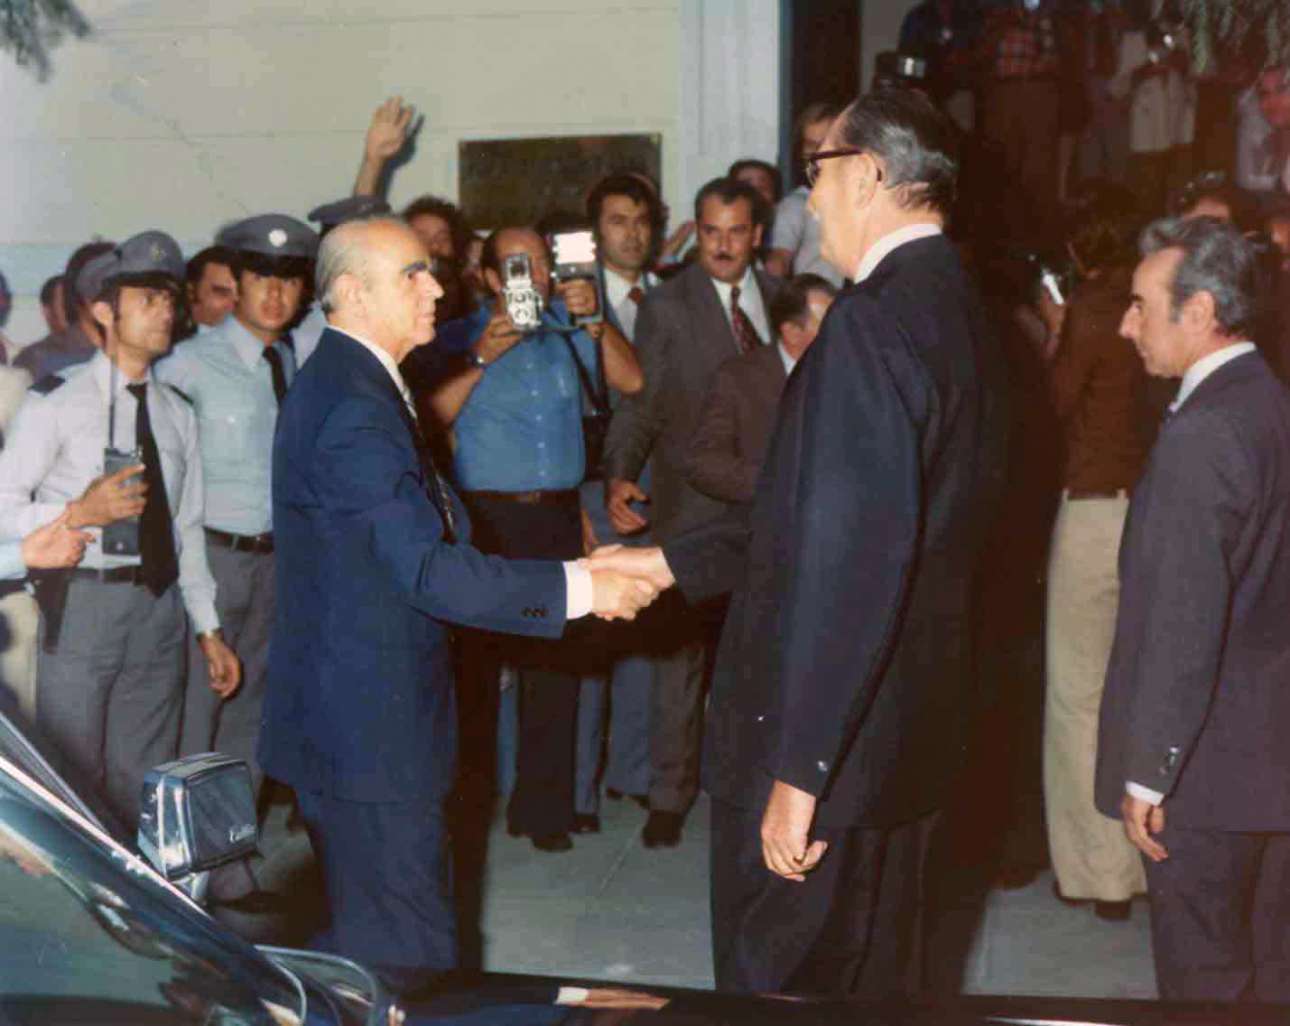 Ο Κωνσταντίνος Καραμανλής στα εγκαίνια των γραφείων της Νέας Δημοκρατίας στην Ρηγίλλης 18, το 1975 (Ιδρυμα Κωνσταντίνος Γ. Καραμανλής)